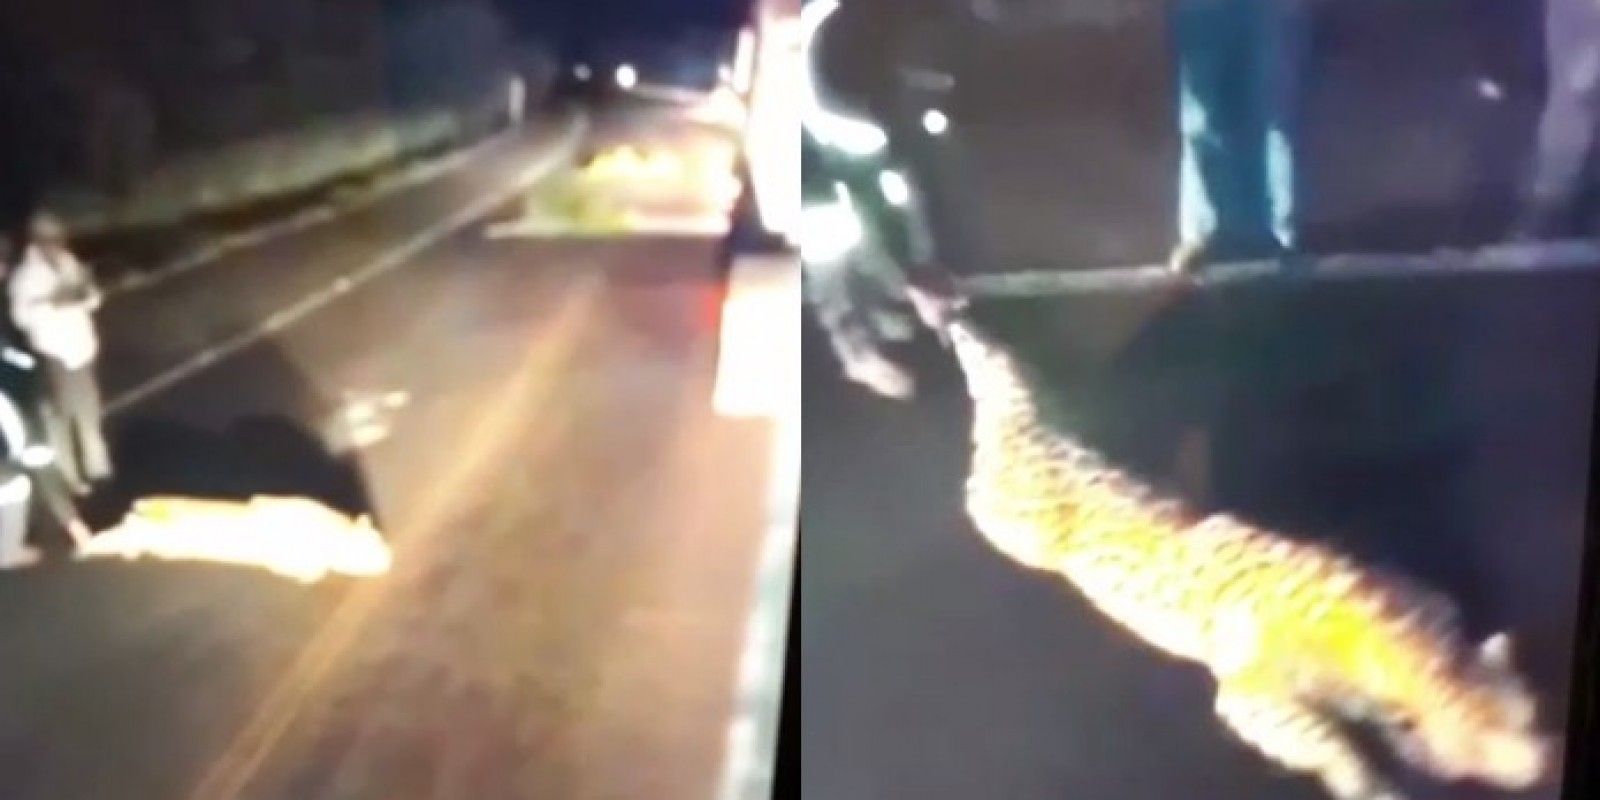 Onça-pintada gigante atropelada em Urussanga? Veja se o vídeo é real ou falso